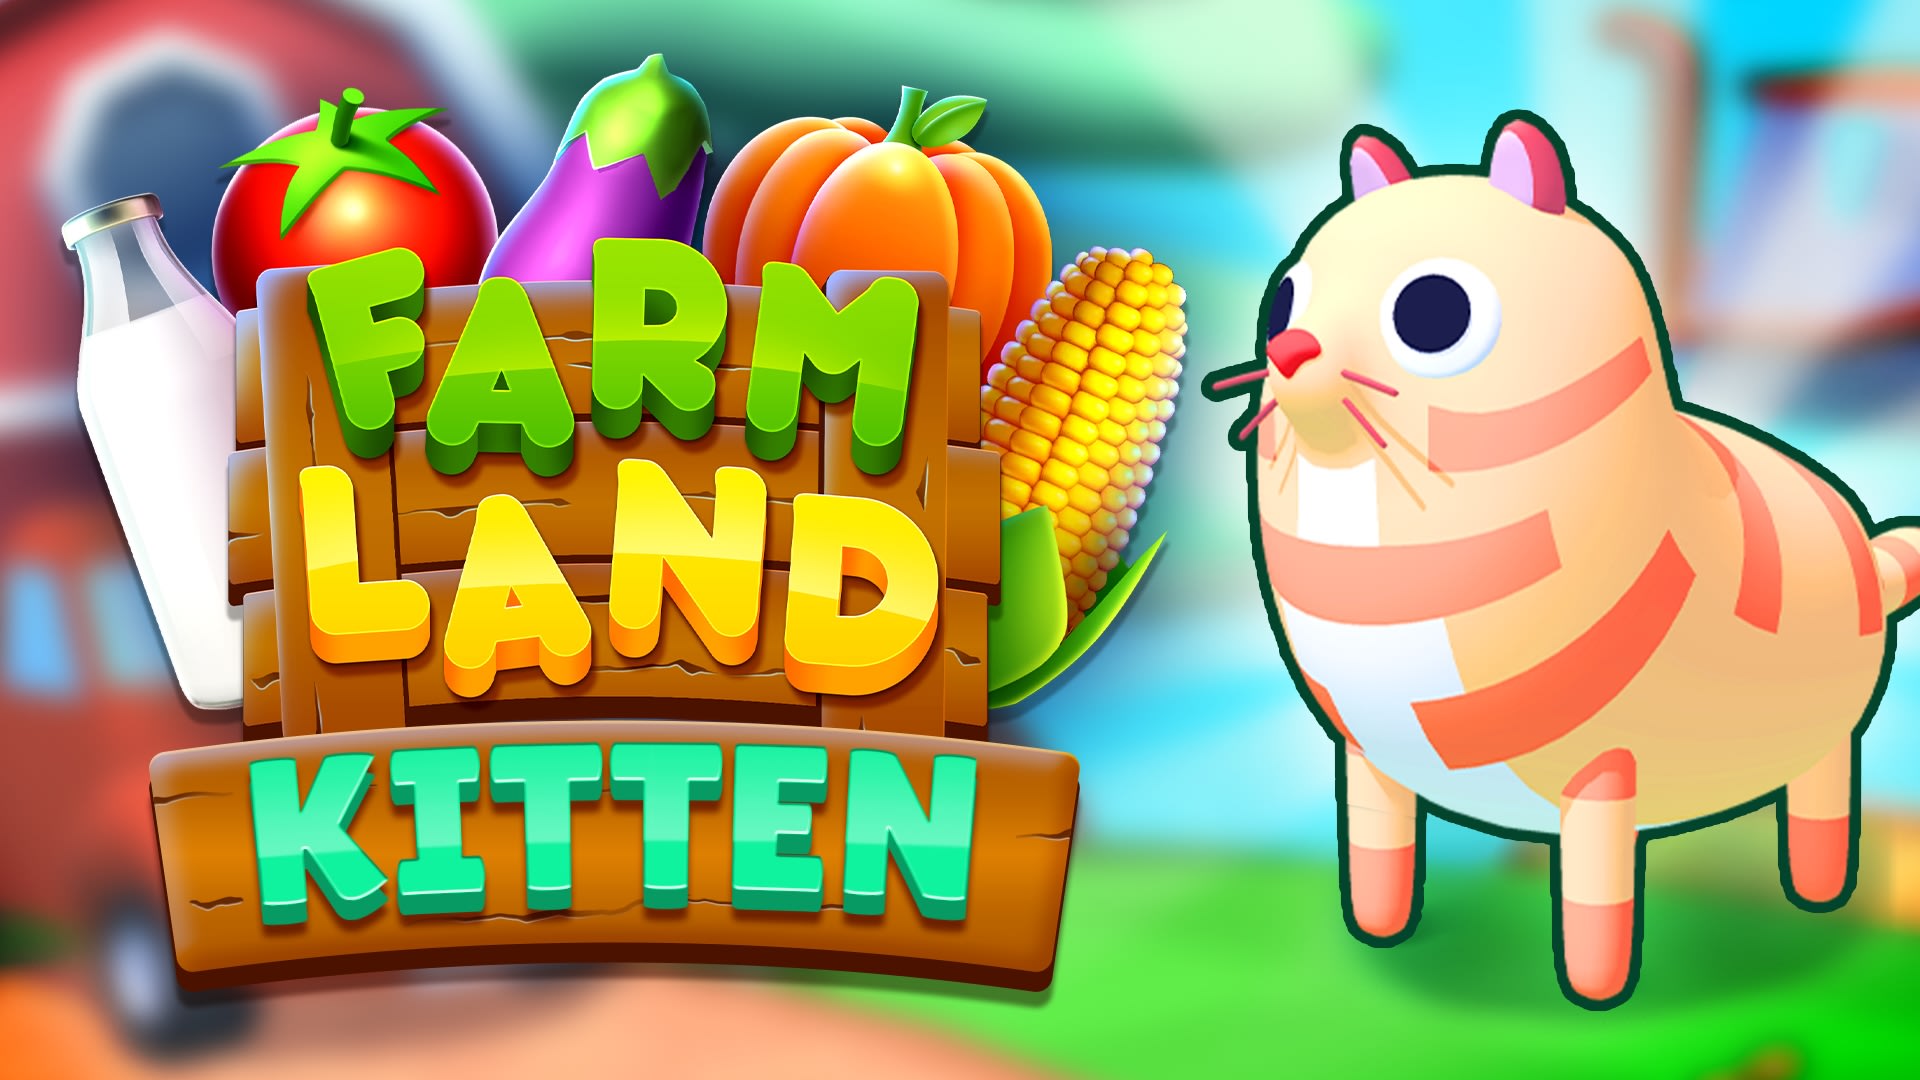 Farm Land: Kitten